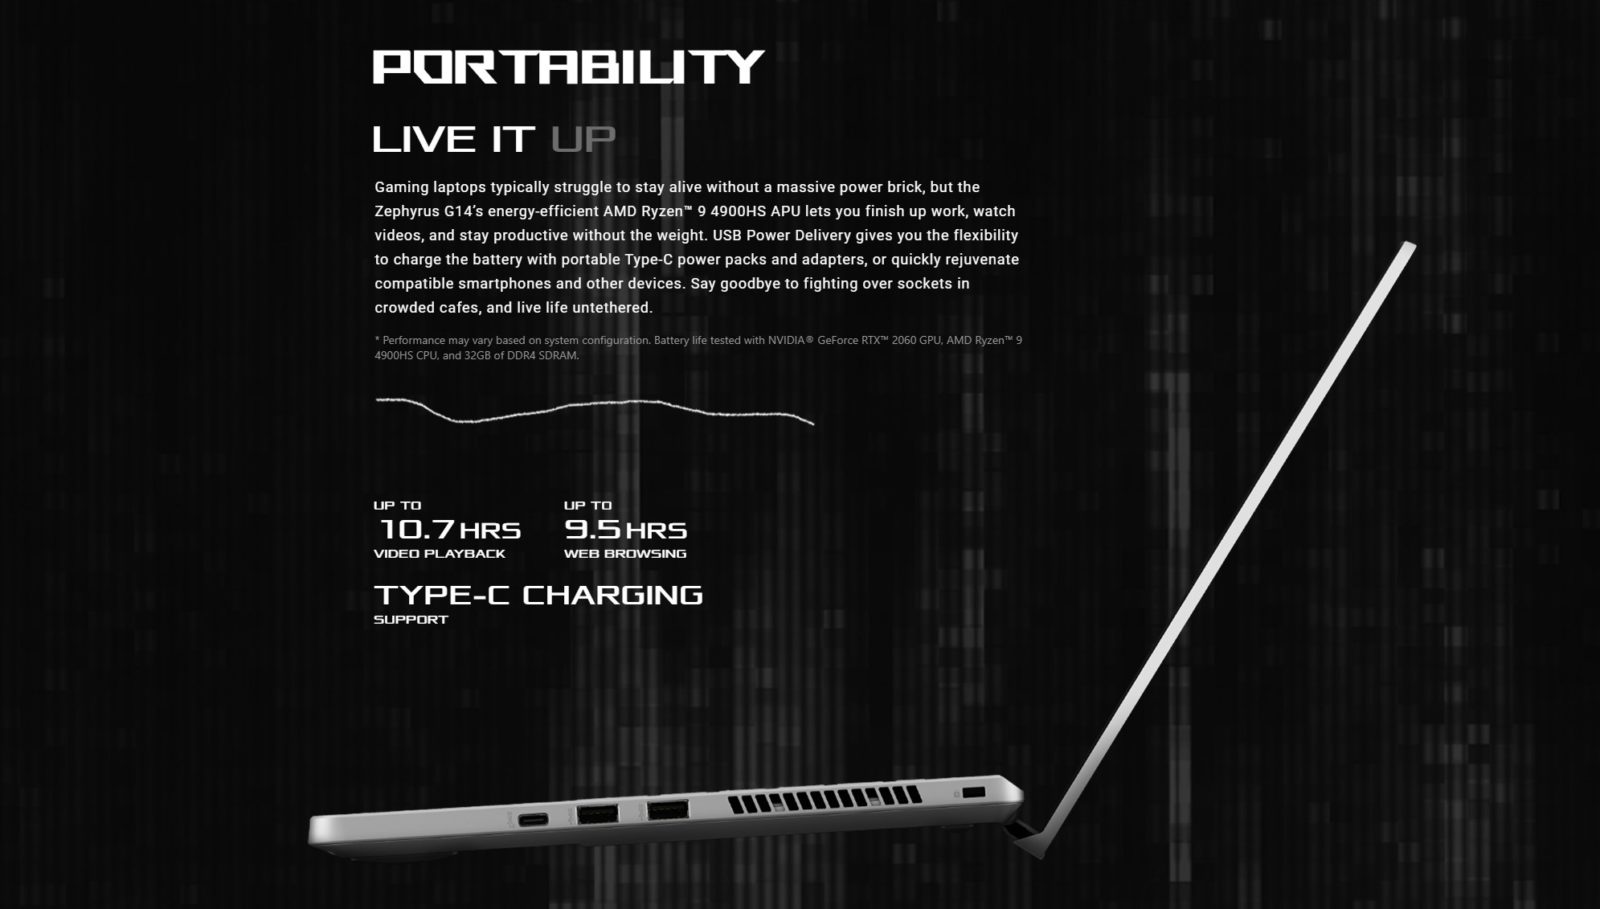 Asus ROG Zephyrus G14 Najbardziej uniwersalny laptop na rynku? CyberBay